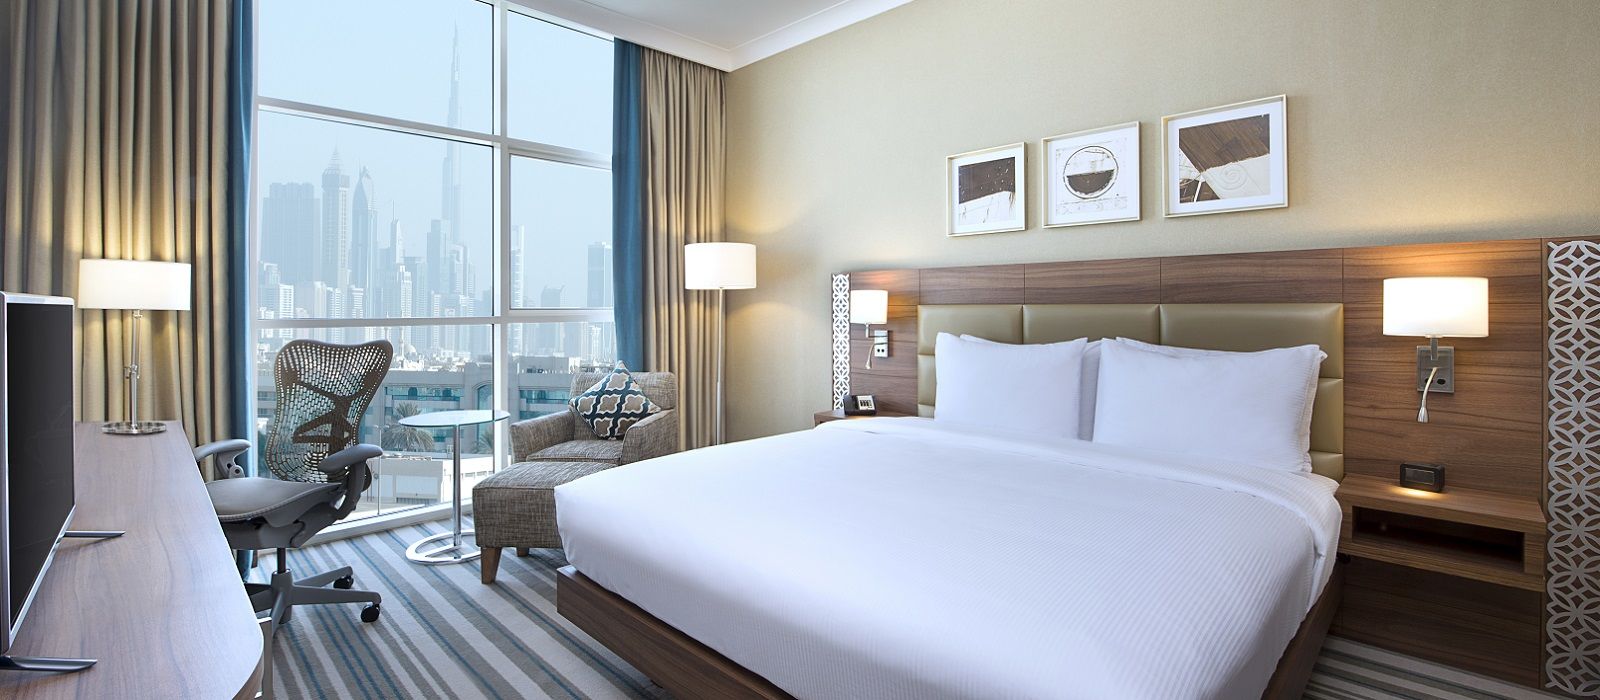 Hilton Garden Inn Dubai Al Mina Delicious Dining Plan Your Trip